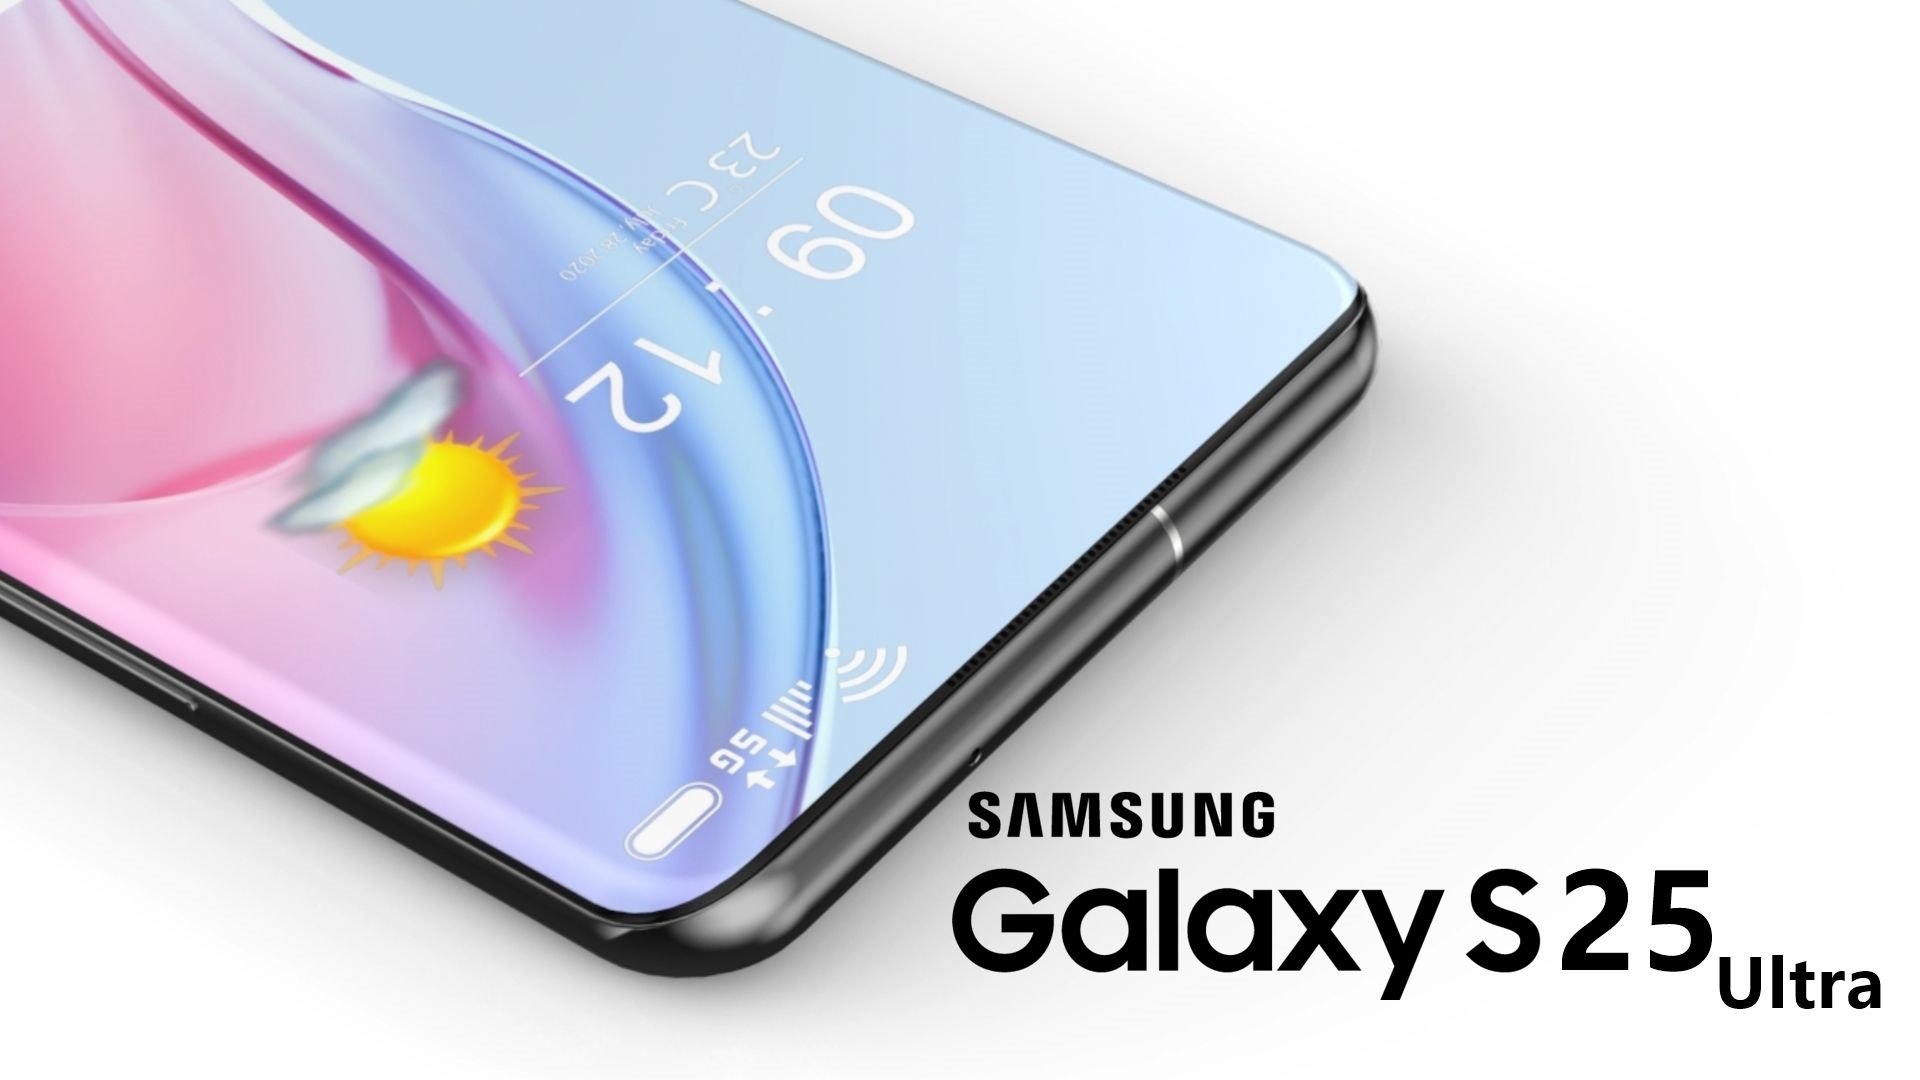 Samsung GALAXY S25 ha rivelato nuove modifiche alle fotocamere principali